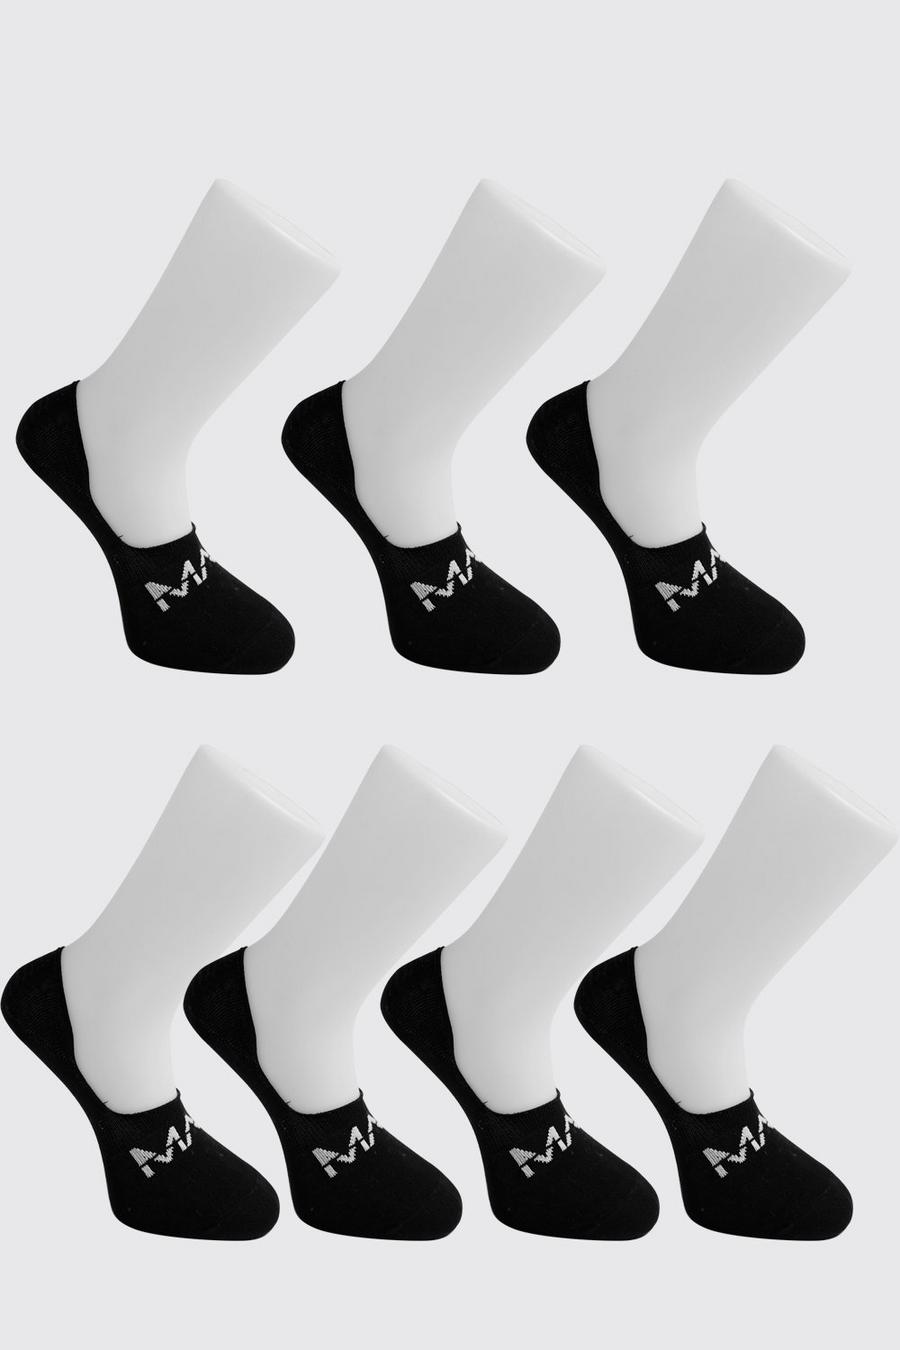 שחור מארז 7 זוגות גרביים בלתי נראים עם כיתוב MAN חצוי image number 1